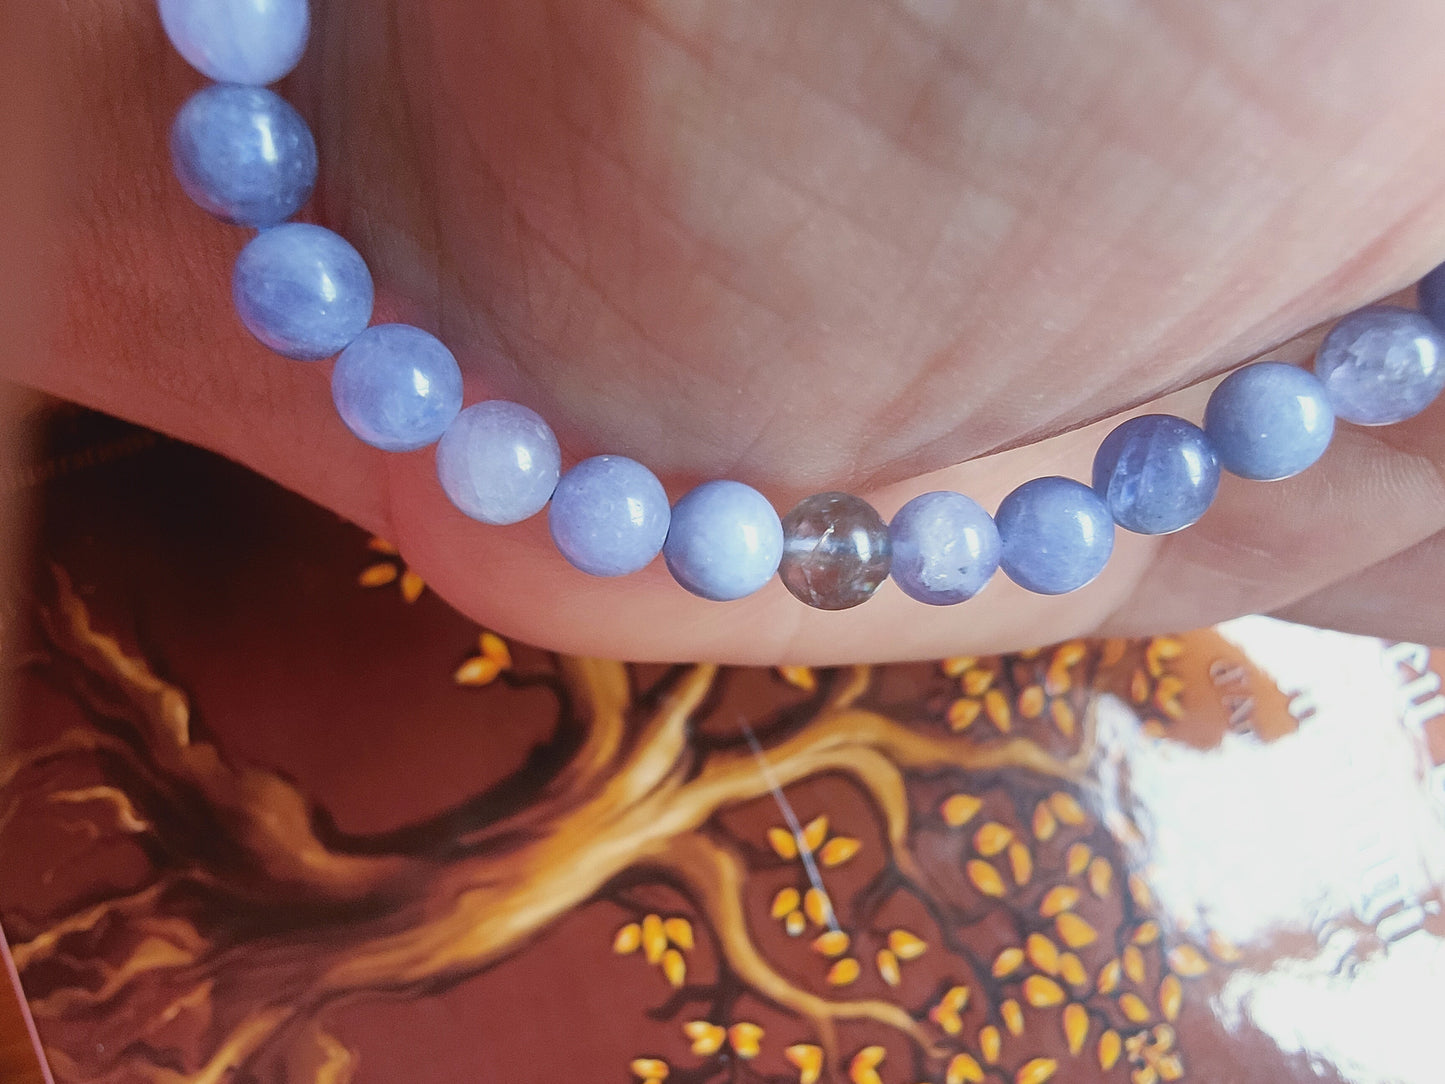 Bracelet en Tanzanite rare - perles de 6 mm - qualité 💎💎💎💎